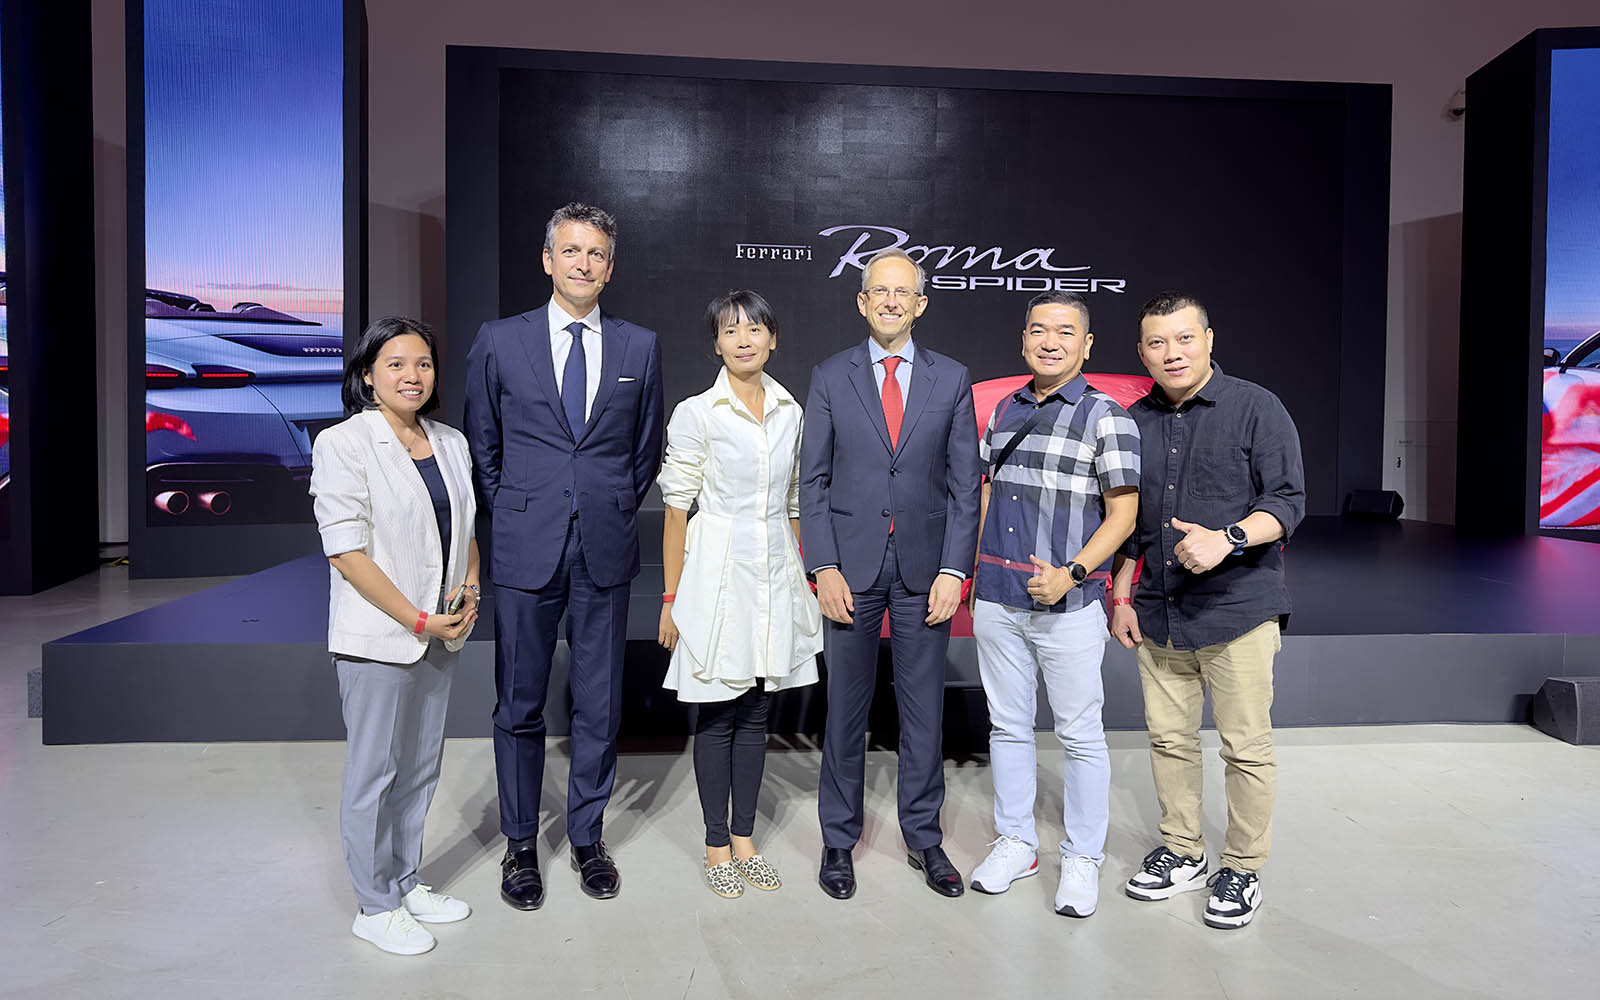 Chụp ảnh lưu niệm cùng ông Benedetto Vigna - CEO Ferrari và Ông Enrico Galliera -Giám đốc kinh doanh tiếp thị toàn cầu Ferrari nhân sự kiện ra mắt Roma Spider & Universo Ferrari lần đầu tiên được tổ chức tại khu vực Châu Á